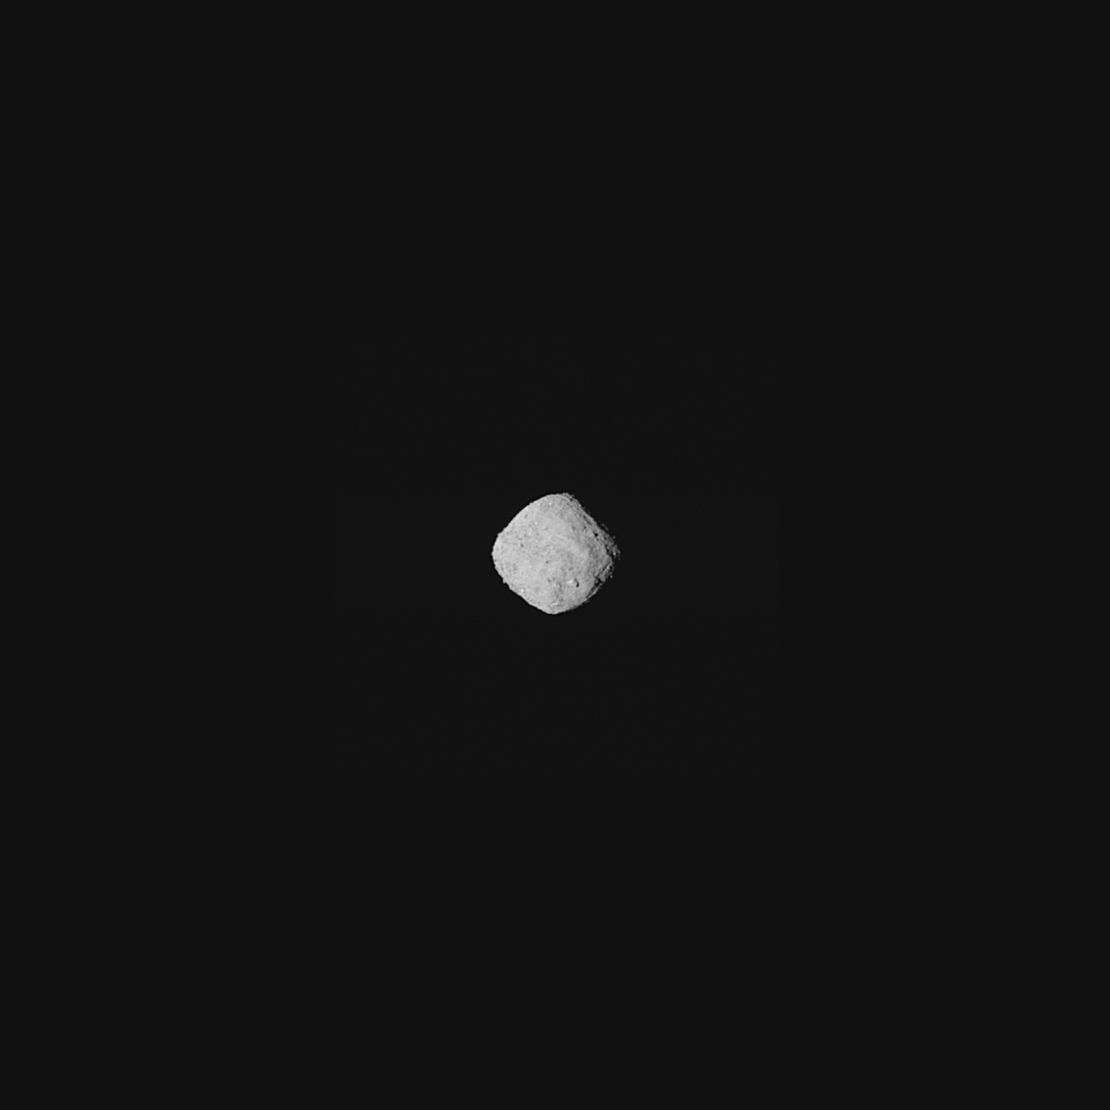 Bennu, as seen on approach by the OSIRIS-REx spacecraft.